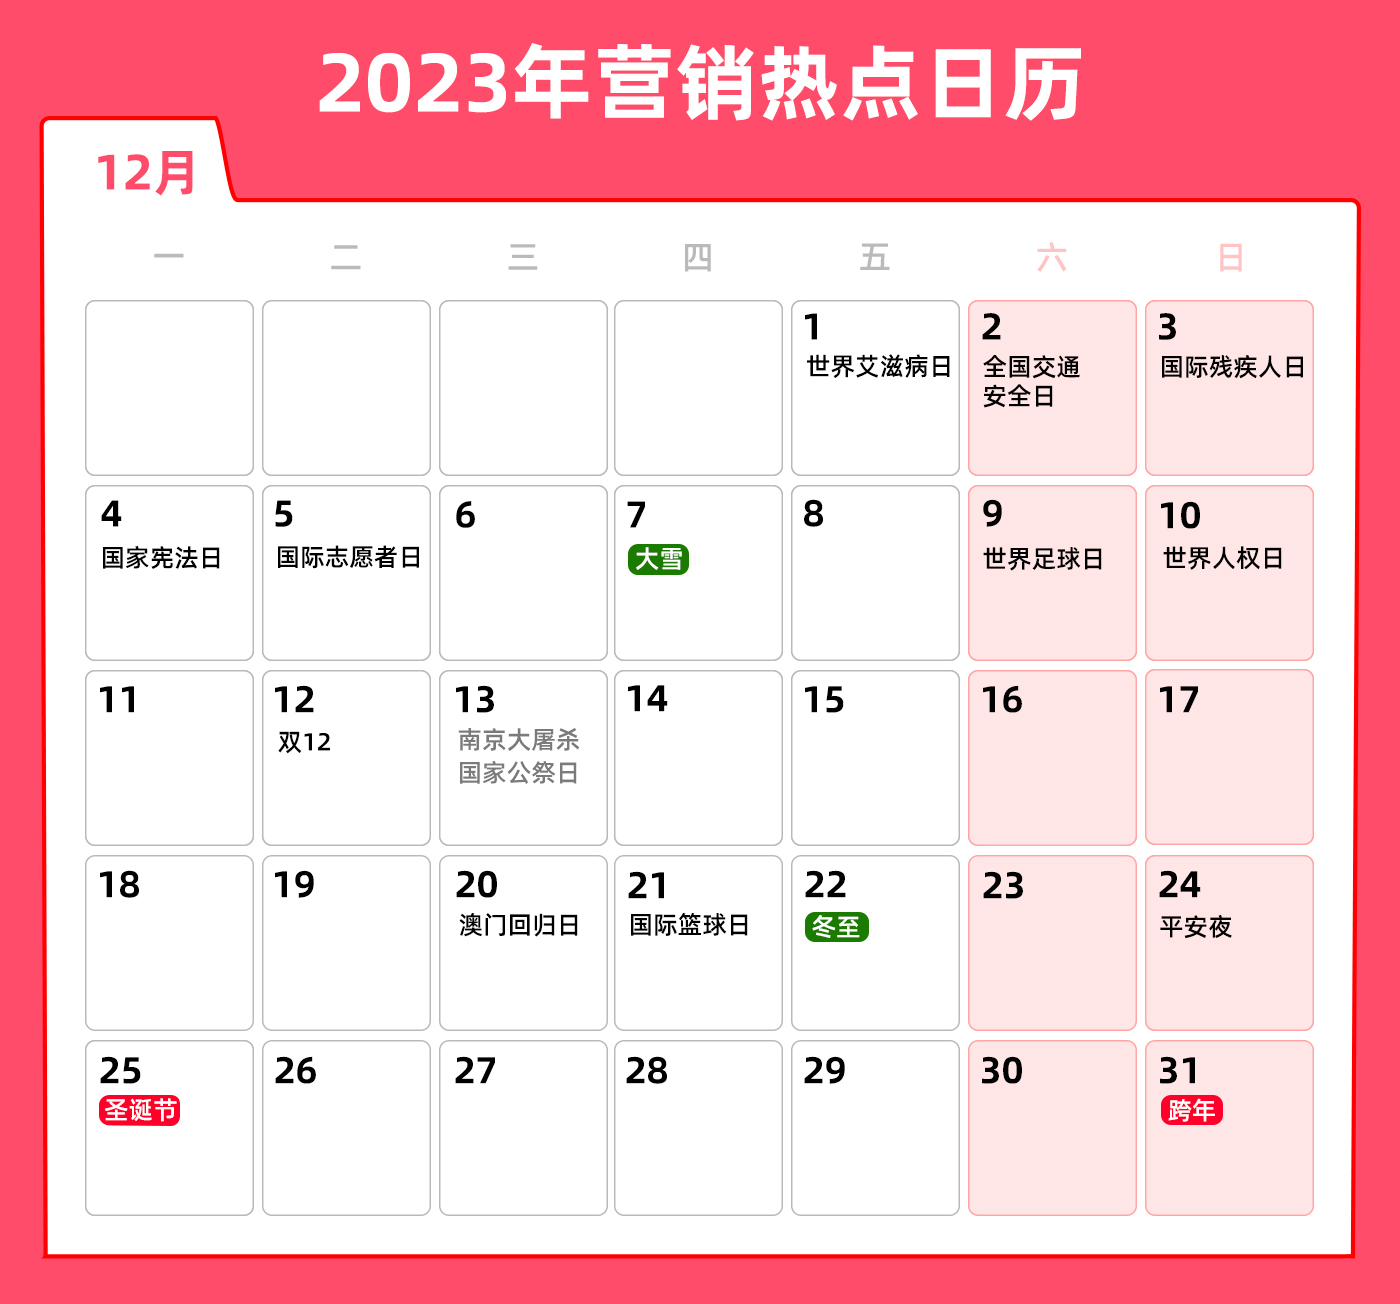 12月营销热点日历-头图en.jpg